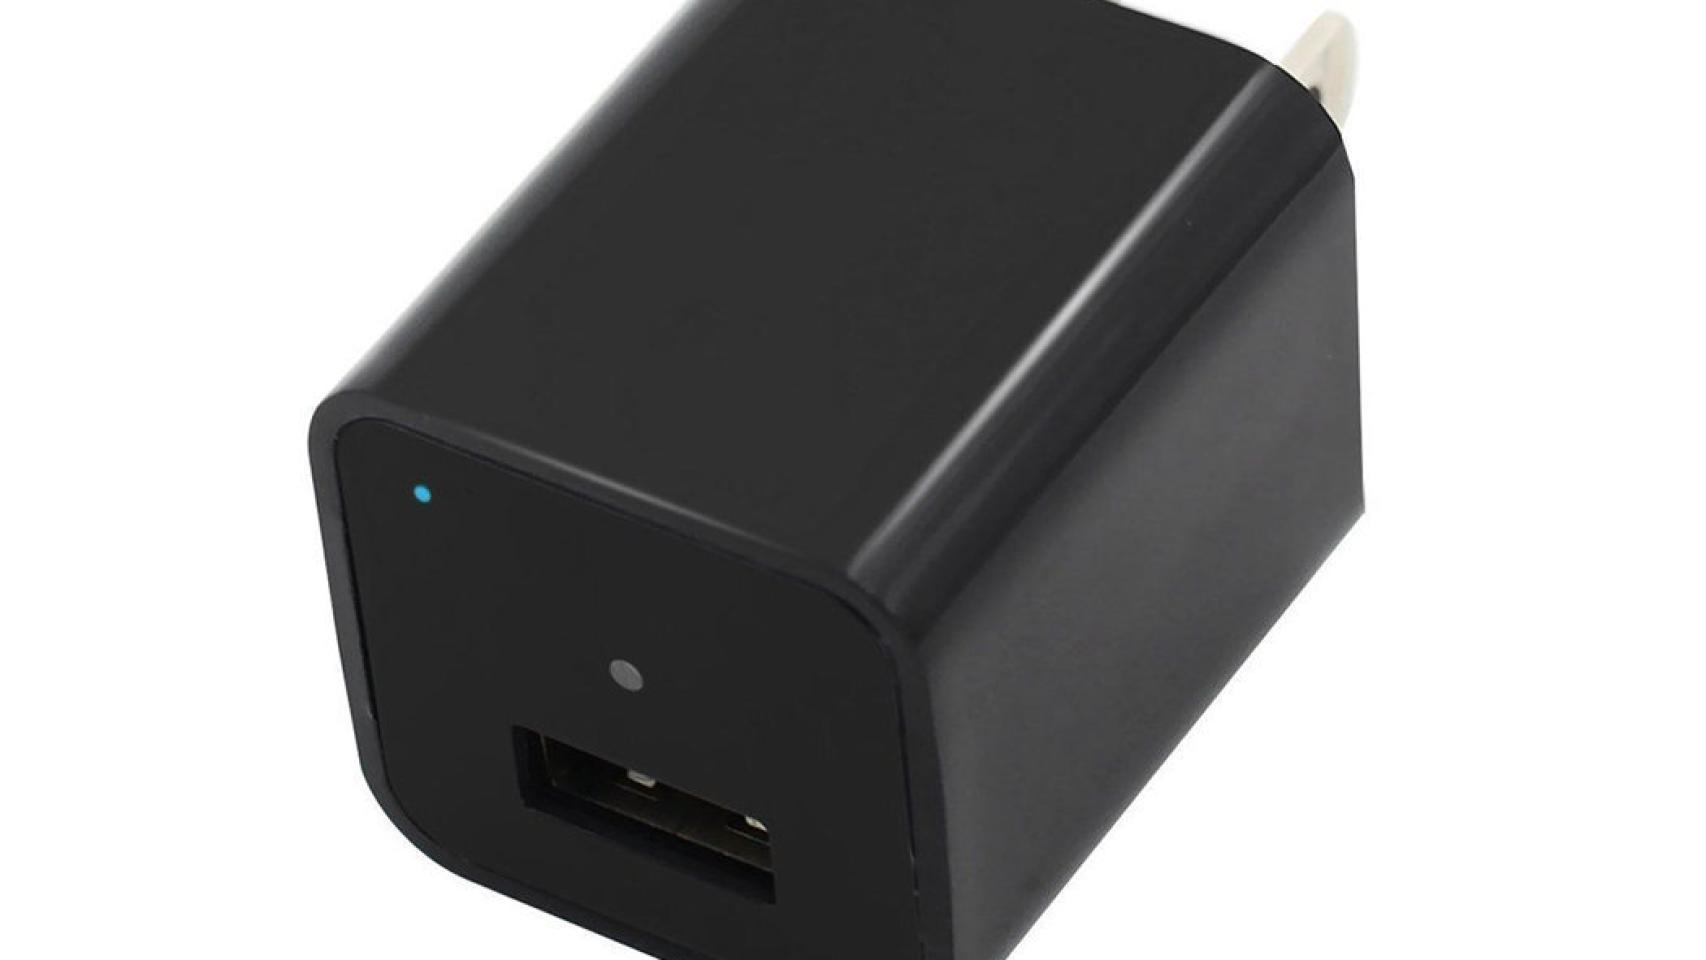 1706px x 960px - Ese cargador USB que has dejado conectado te puede estar grabando